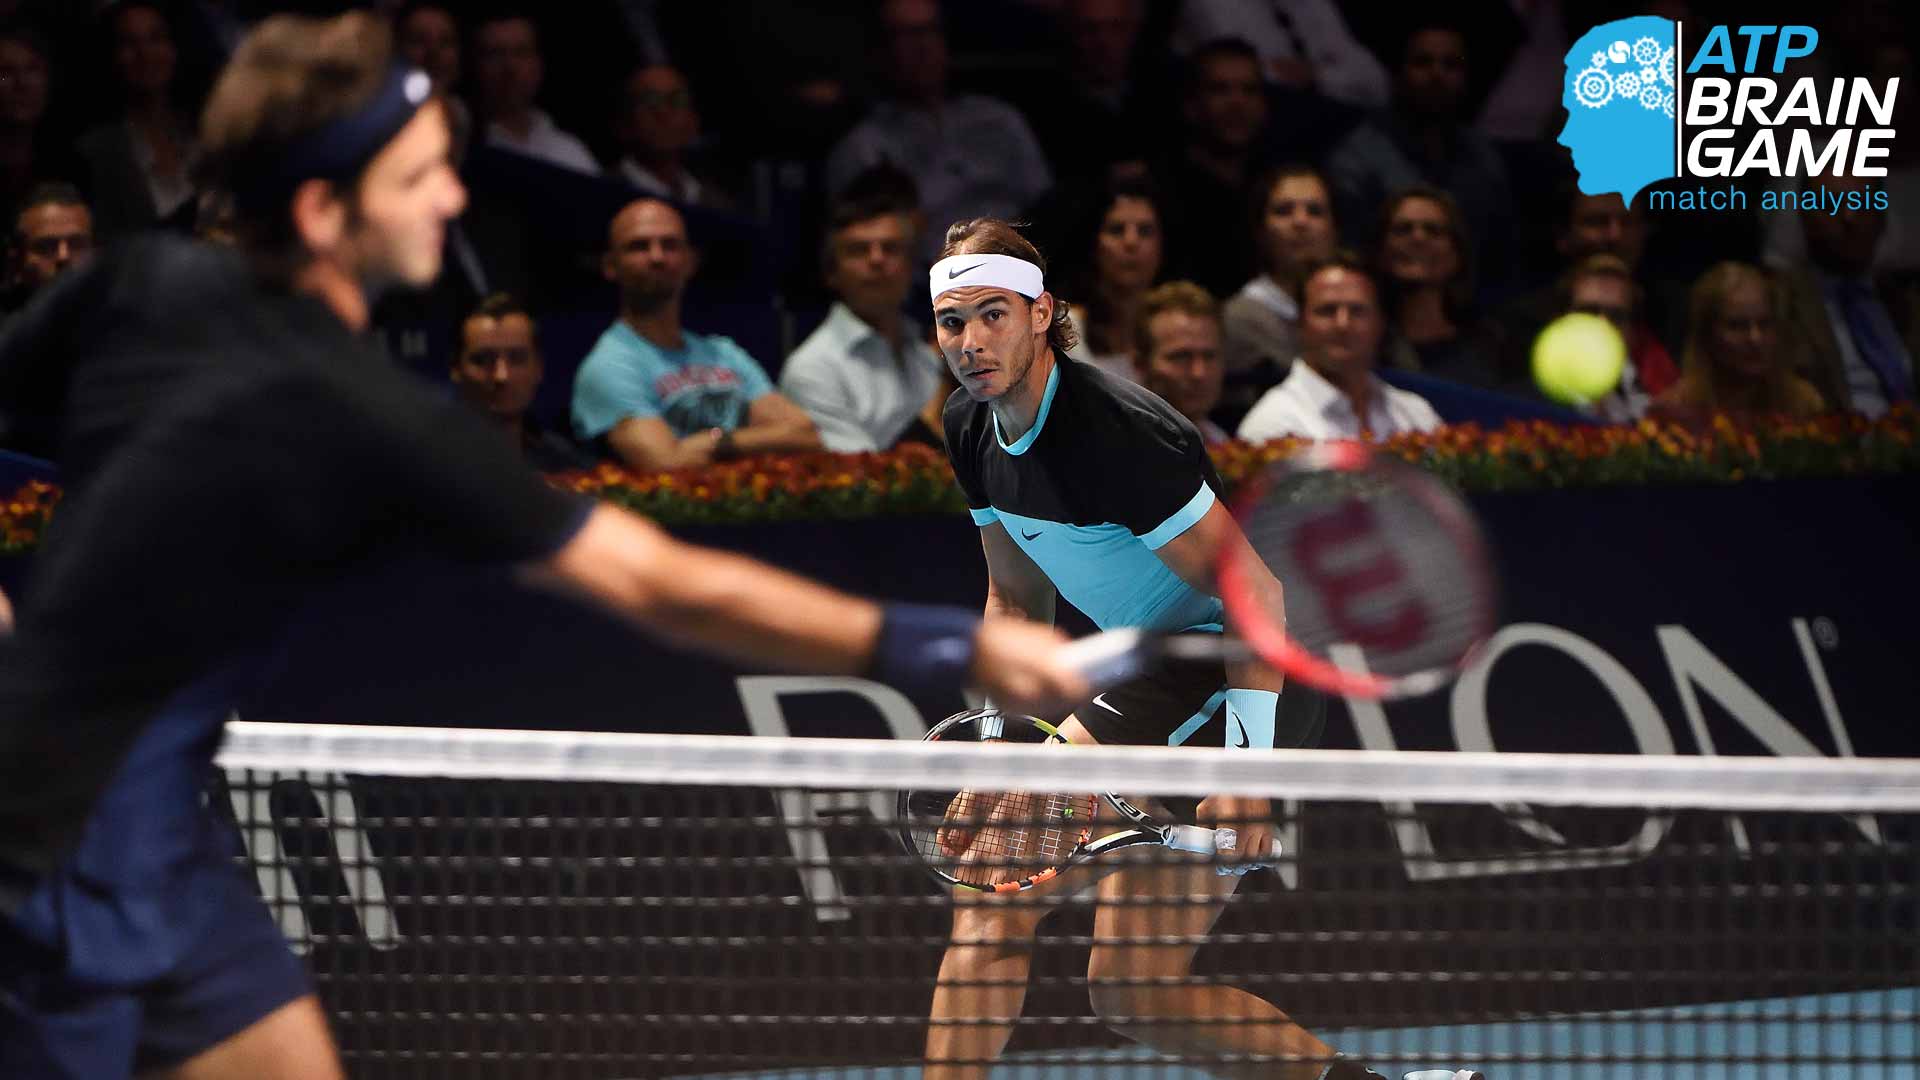 Brain Game: Federer's Net Assault Pivotal In Thwarting Nadal